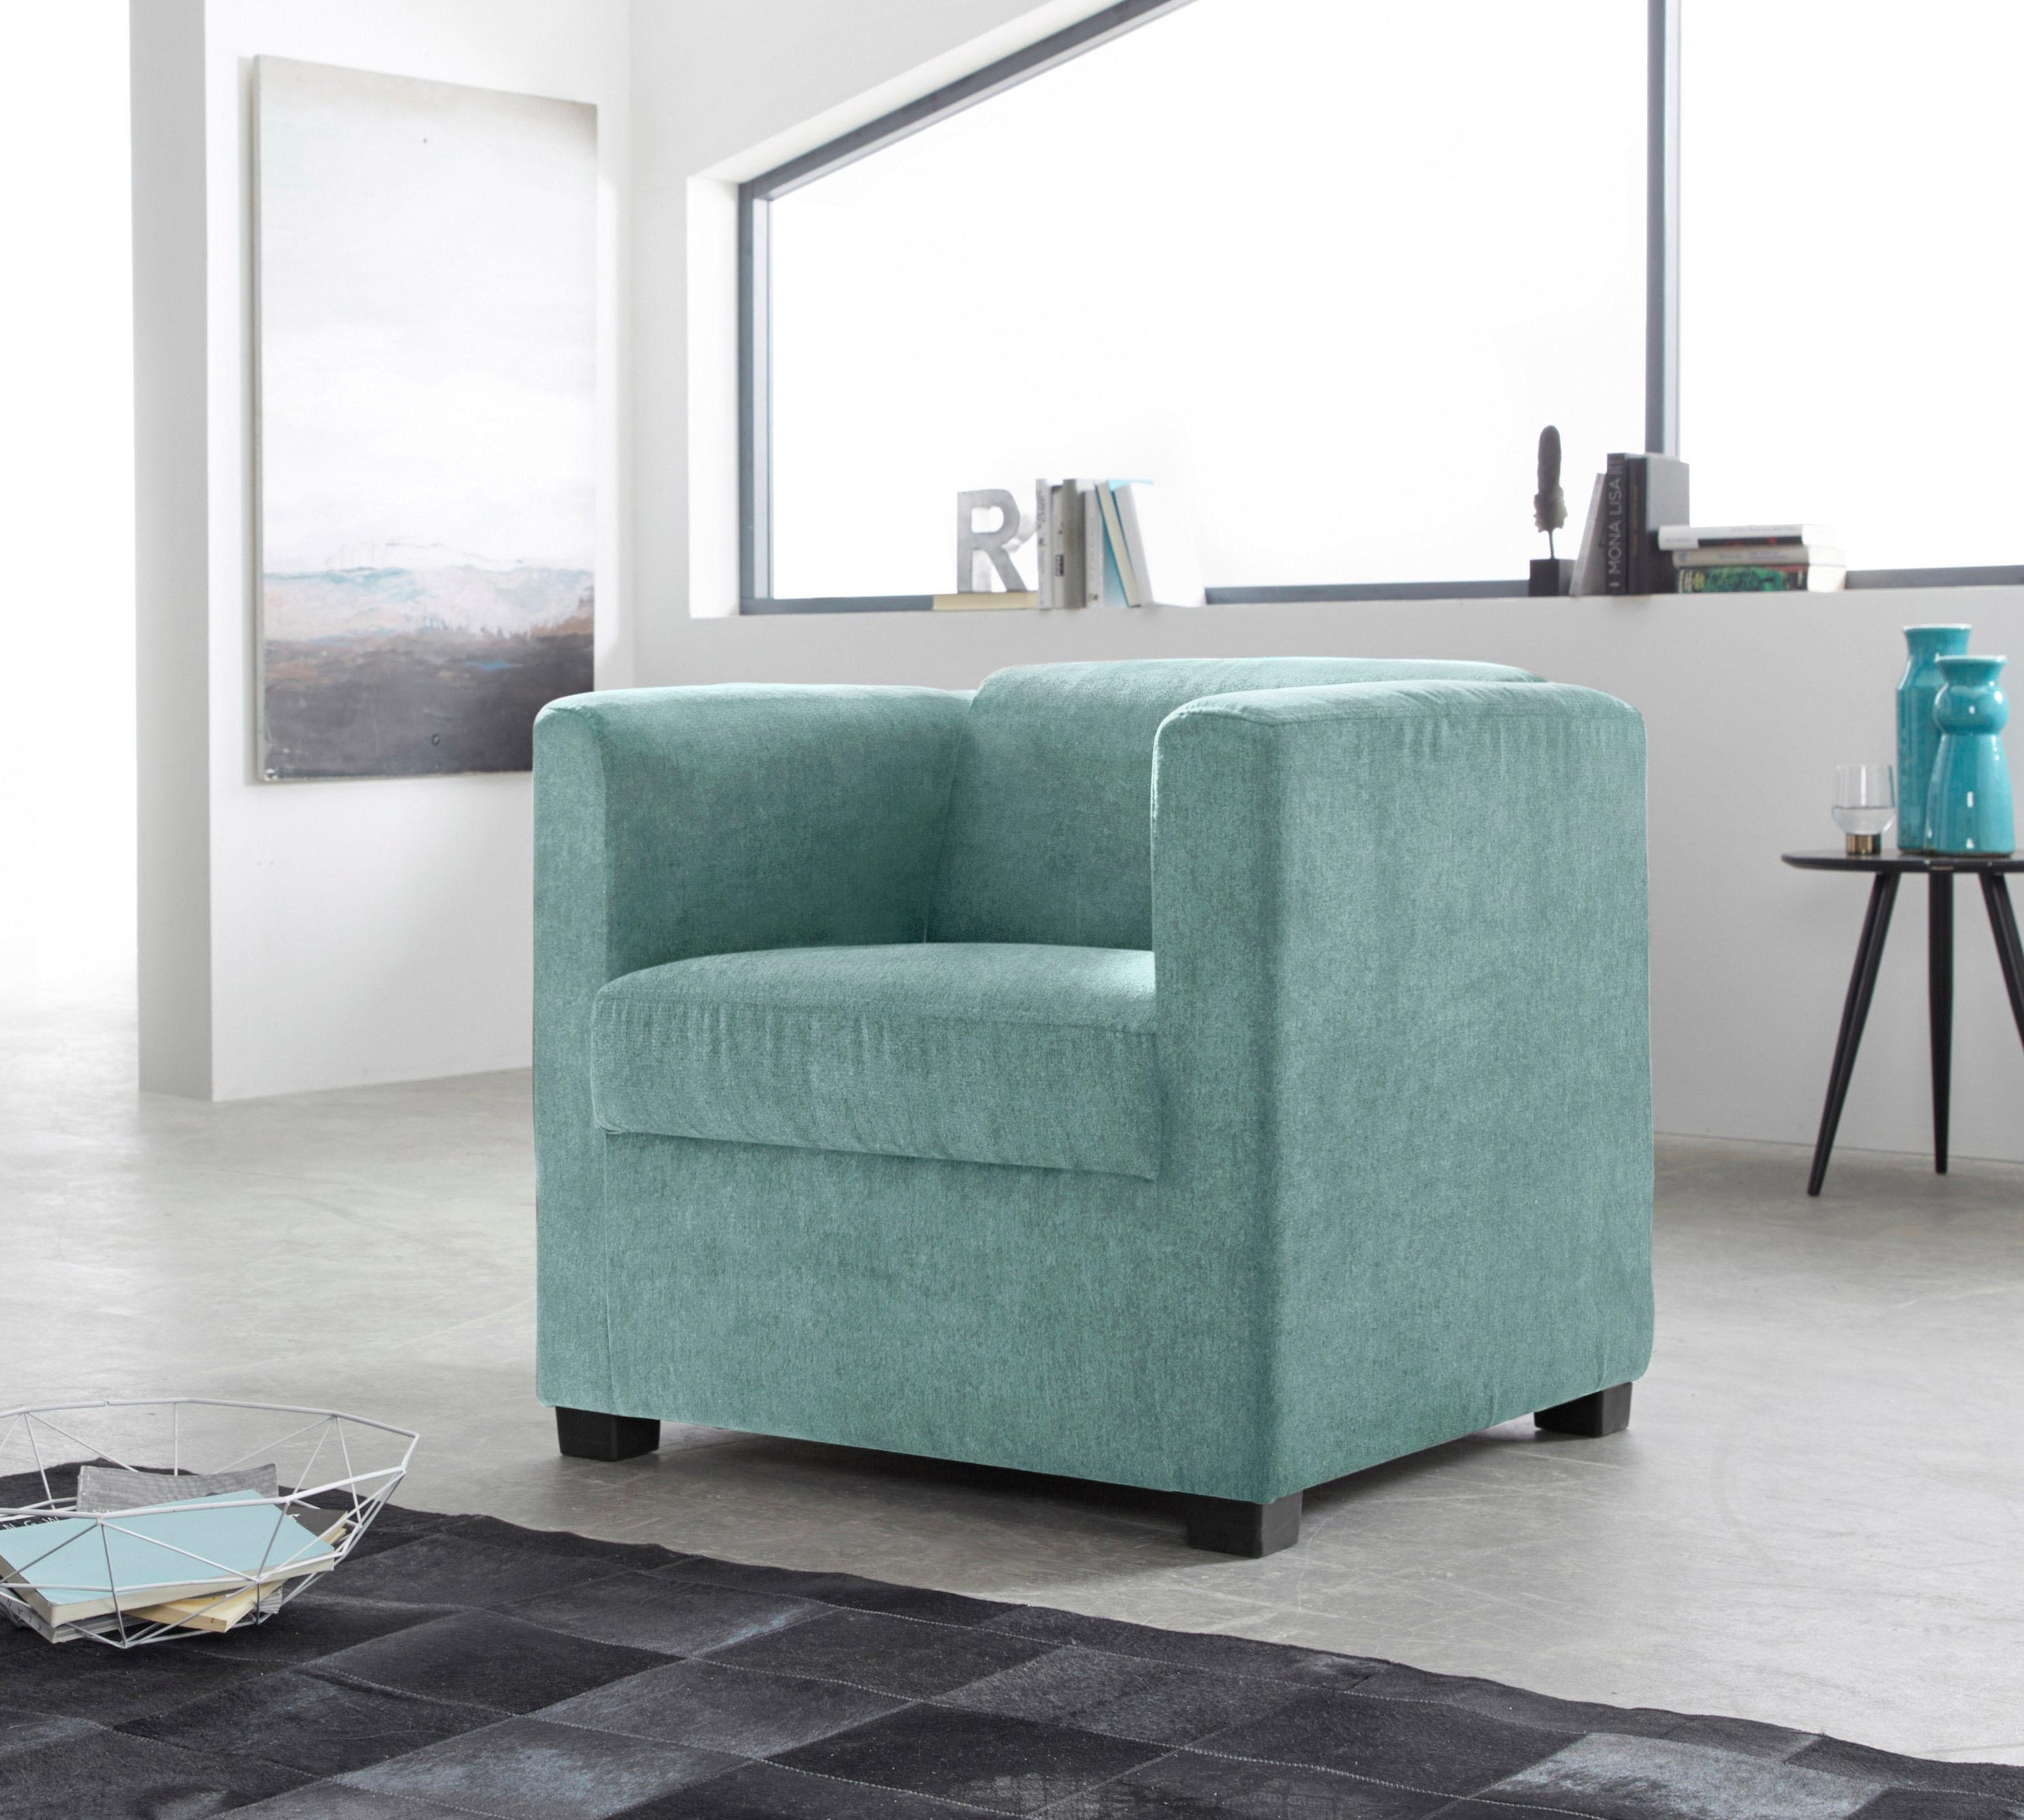 ACTONA GROUP Loungesessel »Chiara«, in unterschiedlichen Bezugsqualitäten  und Farbvarianten, Sitzhöhe 40cm günstig kaufen